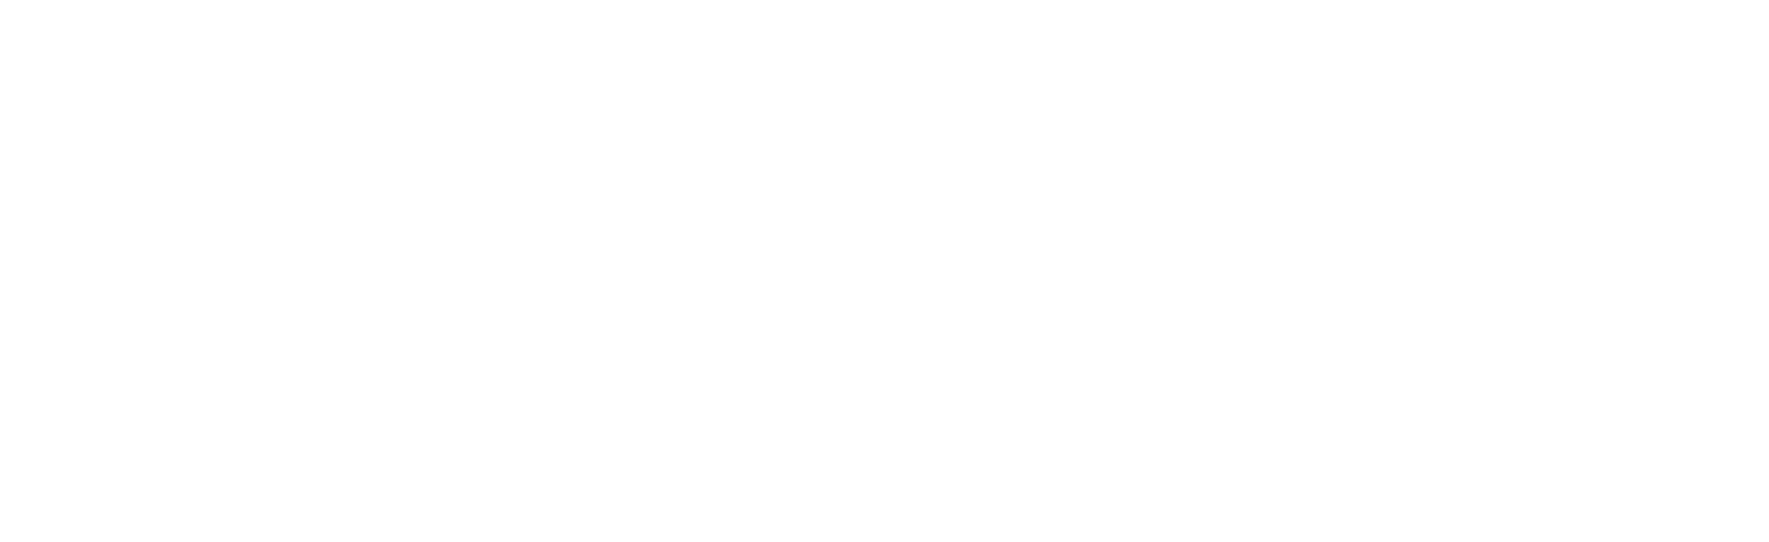 Logo PT Citra Makmur Bina Sahabat - Invert